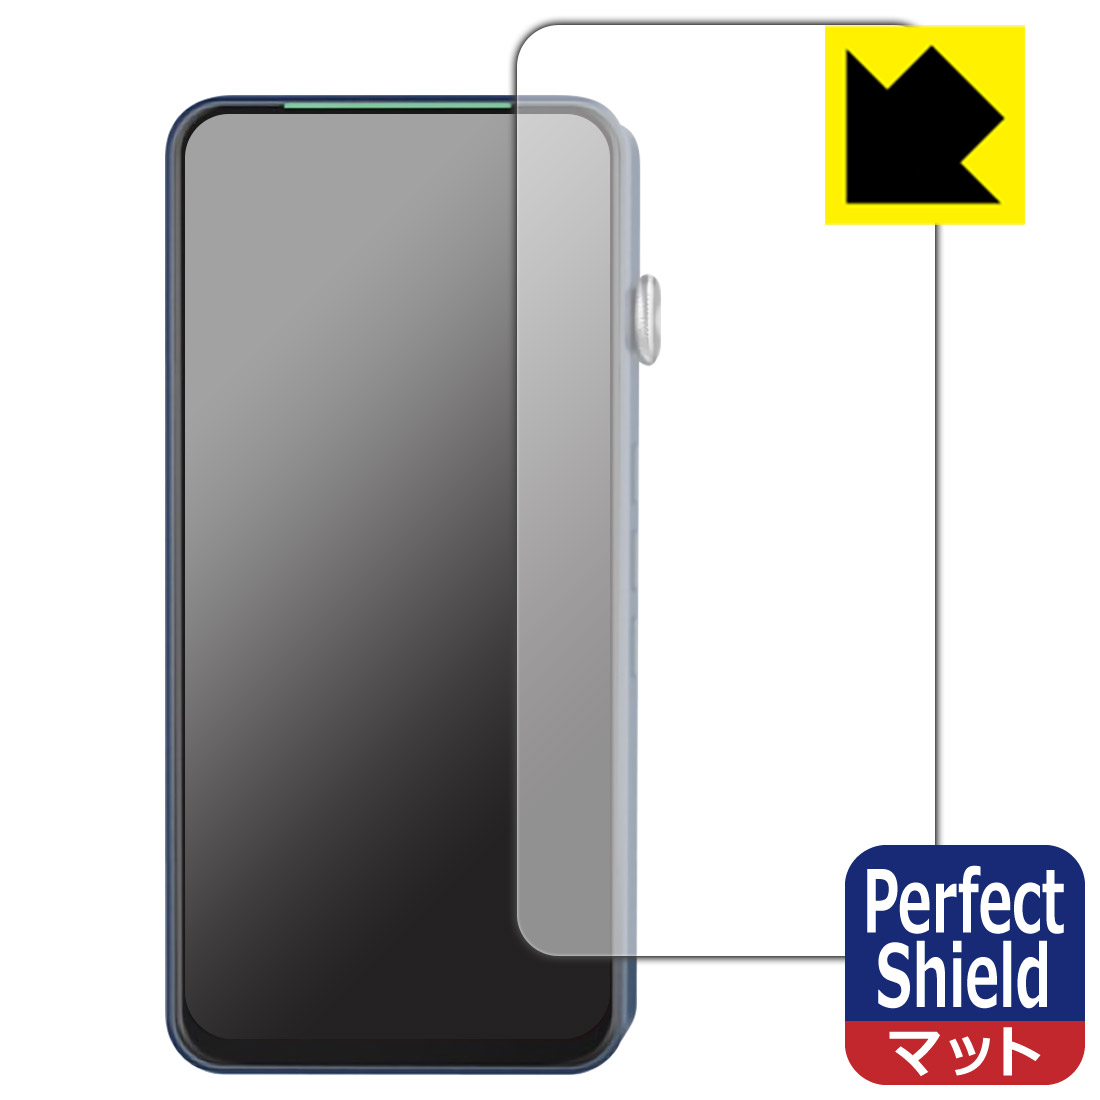 ●対応機種 : iBasso Audio DX320 / iBasso Audio DX300専用の商品です。●製品内容 : 前面用3枚●※保護フィルムの貼り付く範囲はイメージ画像のようになります。●「Perfect Shield」は画面の反射を抑え、指のすべりもなめらかな指紋や皮脂汚れがつきにくい『アンチグレアタイプ(非光沢)の保護フィルム』●安心の国産素材を使用。日本国内の自社工場で製造し出荷しています。【ポスト投函送料無料】商品は【ポスト投函発送 (追跡可能メール便)】で発送します。お急ぎ、配達日時を指定されたい方は以下のクーポンを同時購入ください。【お急ぎ便クーポン】　プラス110円(税込)で速達扱いでの発送。お届けはポストへの投函となります。【配達日時指定クーポン】　プラス550円(税込)で配達日時を指定し、宅配便で発送させていただきます。【お急ぎ便クーポン】はこちらをクリック【配達日時指定クーポン】はこちらをクリック 　 表面に微細な凹凸を作ることにより、外光を乱反射させギラツキを抑える「アンチグレア加工」がされております。 屋外での太陽光の映り込み、屋内でも蛍光灯などの映り込みが気になるシーンが多い方におすすめです。 また、指紋がついた場合でも目立ちにくいという特長があります。 指滑りはさらさらな使用感でストレスのない操作・入力が可能です。 ハードコート加工がされており、キズや擦れに強くなっています。簡単にキズがつかず長くご利用いただけます。 反射防止のアンチグレア加工で指紋が目立ちにくい上、表面は防汚コーティングがされており、皮脂や汚れがつきにくく、また、落ちやすくなっています。 接着面は気泡の入りにくい特殊な自己吸着タイプです。素材に柔軟性があり、貼り付け作業も簡単にできます。また、はがすときにガラス製フィルムのように割れてしまうことはありません。 貼り直しが何度でもできるので、正しい位置へ貼り付けられるまでやり直すことができます。 最高級グレードの国産素材を日本国内の弊社工場で加工している完全な Made in Japan です。安心の品質をお届けします。 使用上の注意 ●本製品は機器の画面をキズなどから保護するフィルムです。他の目的にはご使用にならないでください。 ●本製品は液晶保護および機器本体を完全に保護することを保証するものではありません。機器の破損、損傷、故障、その他損害につきましては一切の責任を負いかねます。 ●製品の性質上、画面操作の反応が変化したり、表示等が変化して見える場合がございます。 ●貼り付け作業時の失敗(位置ズレ、汚れ、ゆがみ、折れ、気泡など)および取り外し作業時の破損、損傷などについては、一切の責任を負いかねます。 ●水に濡れた状態でのご使用は吸着力の低下などにより、保護フィルムがはがれてしまう場合がございます。防水対応の機器でご使用の場合はご注意ください。 ●アルコール類やその他薬剤を本製品に付着させないでください。表面のコーティングや吸着面が変質するおそれがあります。 ●品質向上のため、仕様などを予告なく変更する場合がございますので、予めご了承ください。